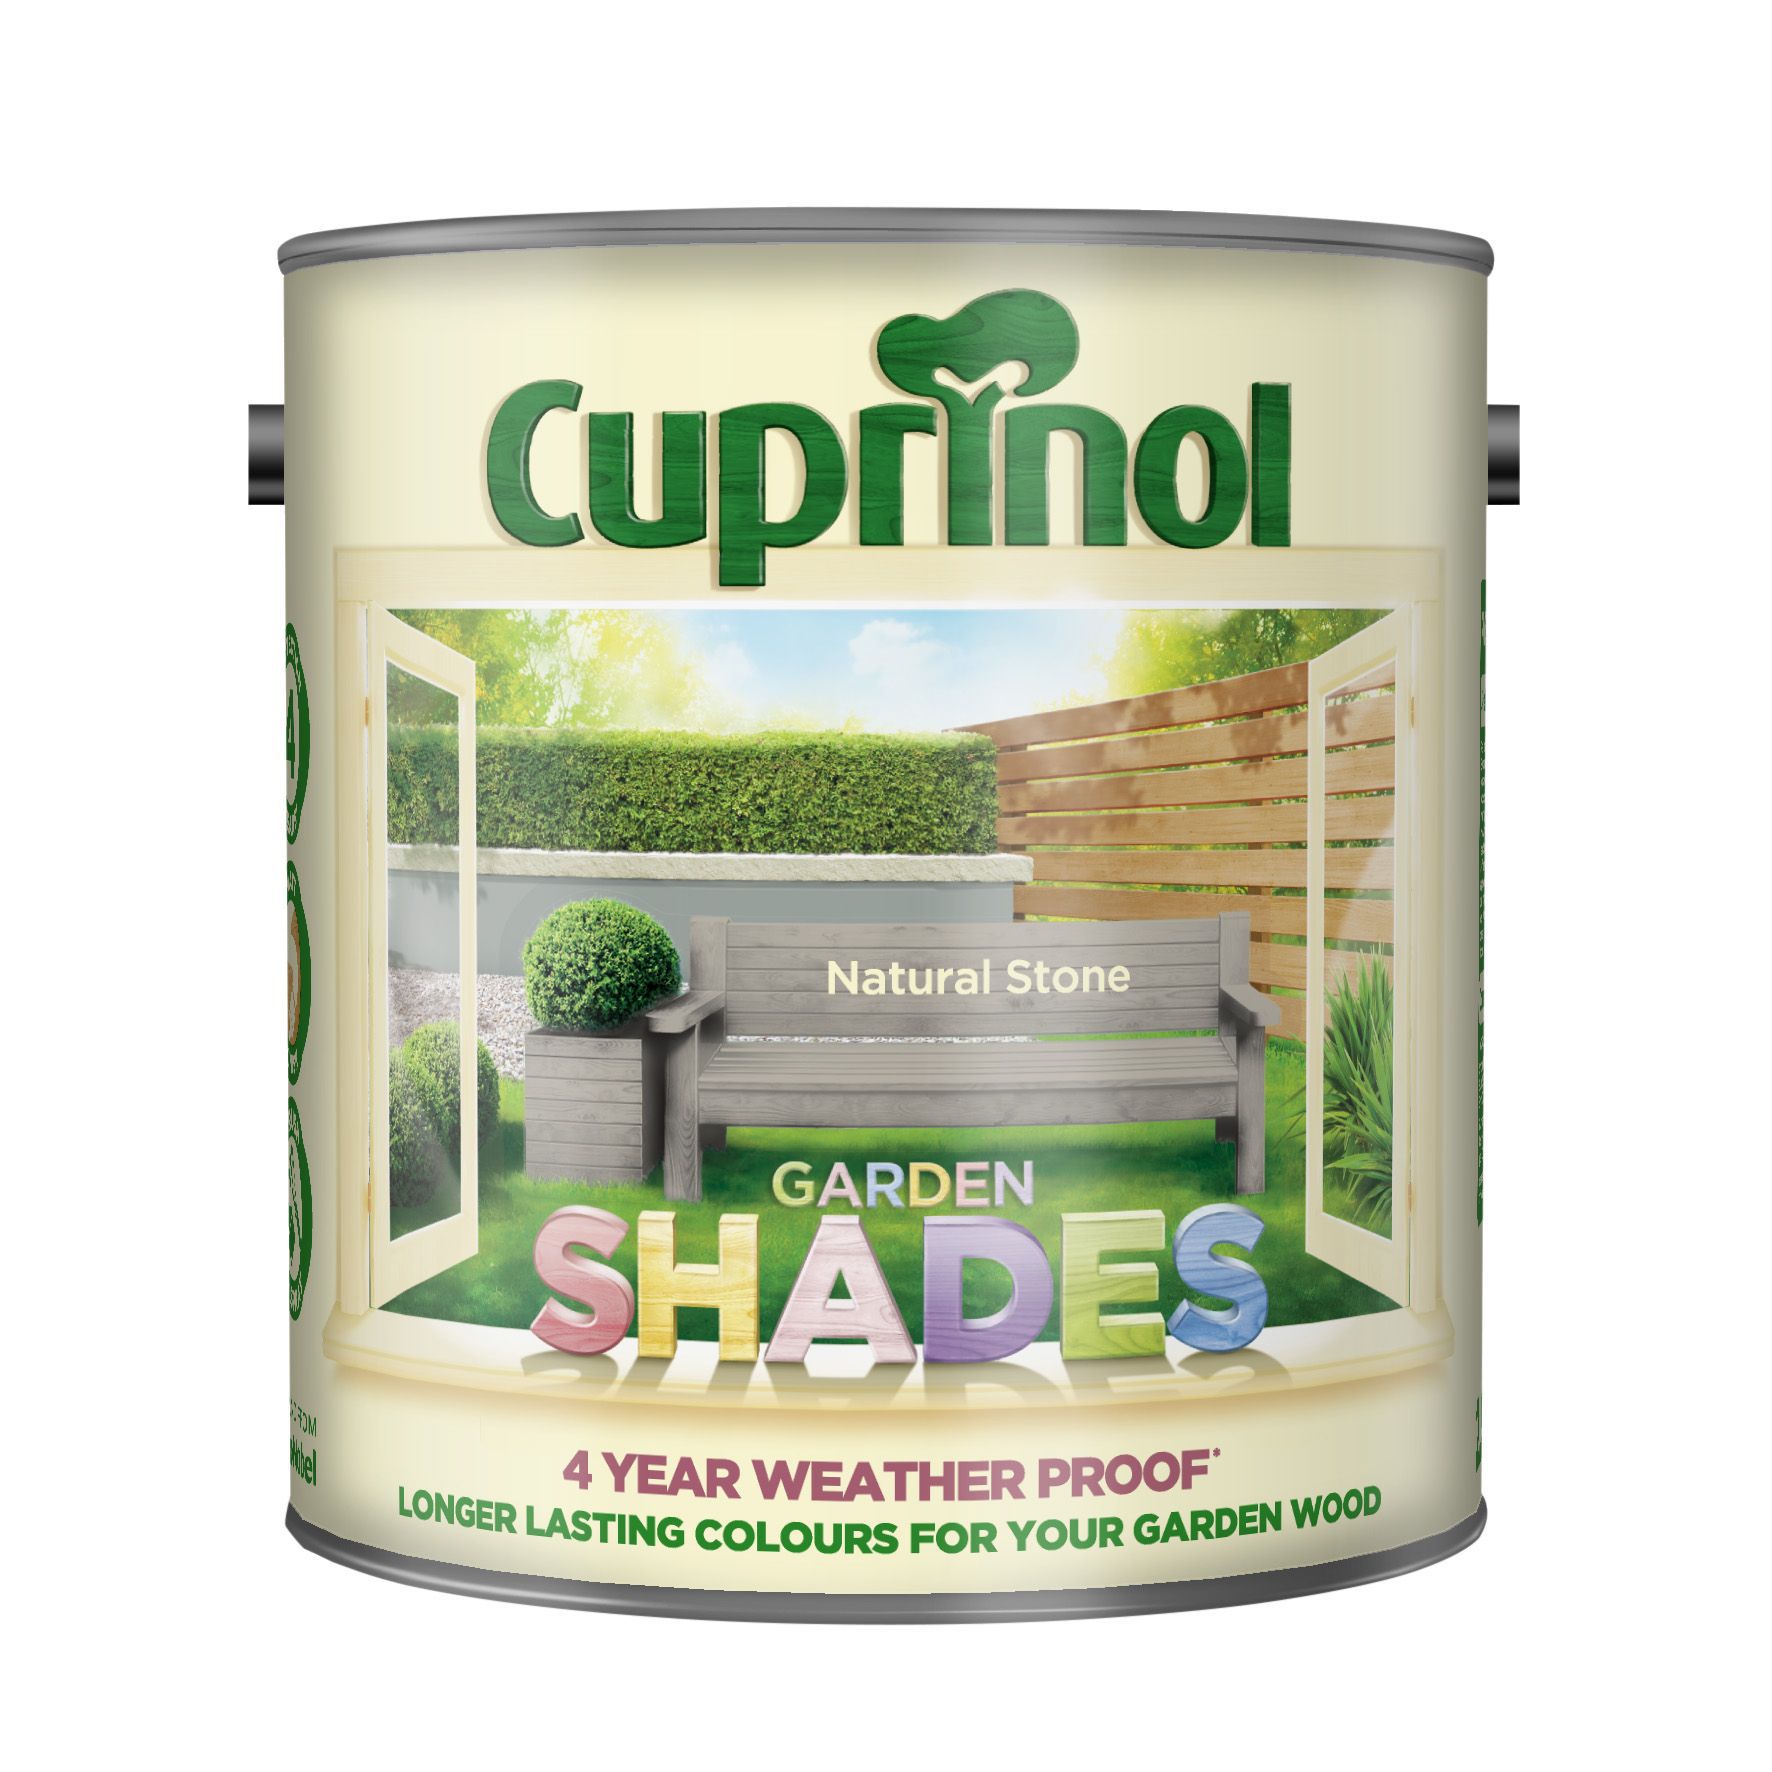 Cuprinol Garden shades Natural stone Matt Exterior Wood paint, 2.5L